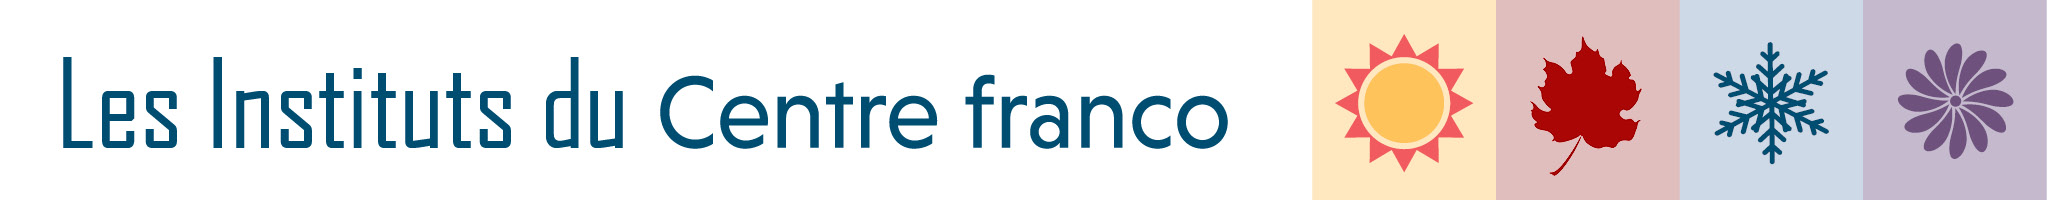 Les instituts du Centre franco